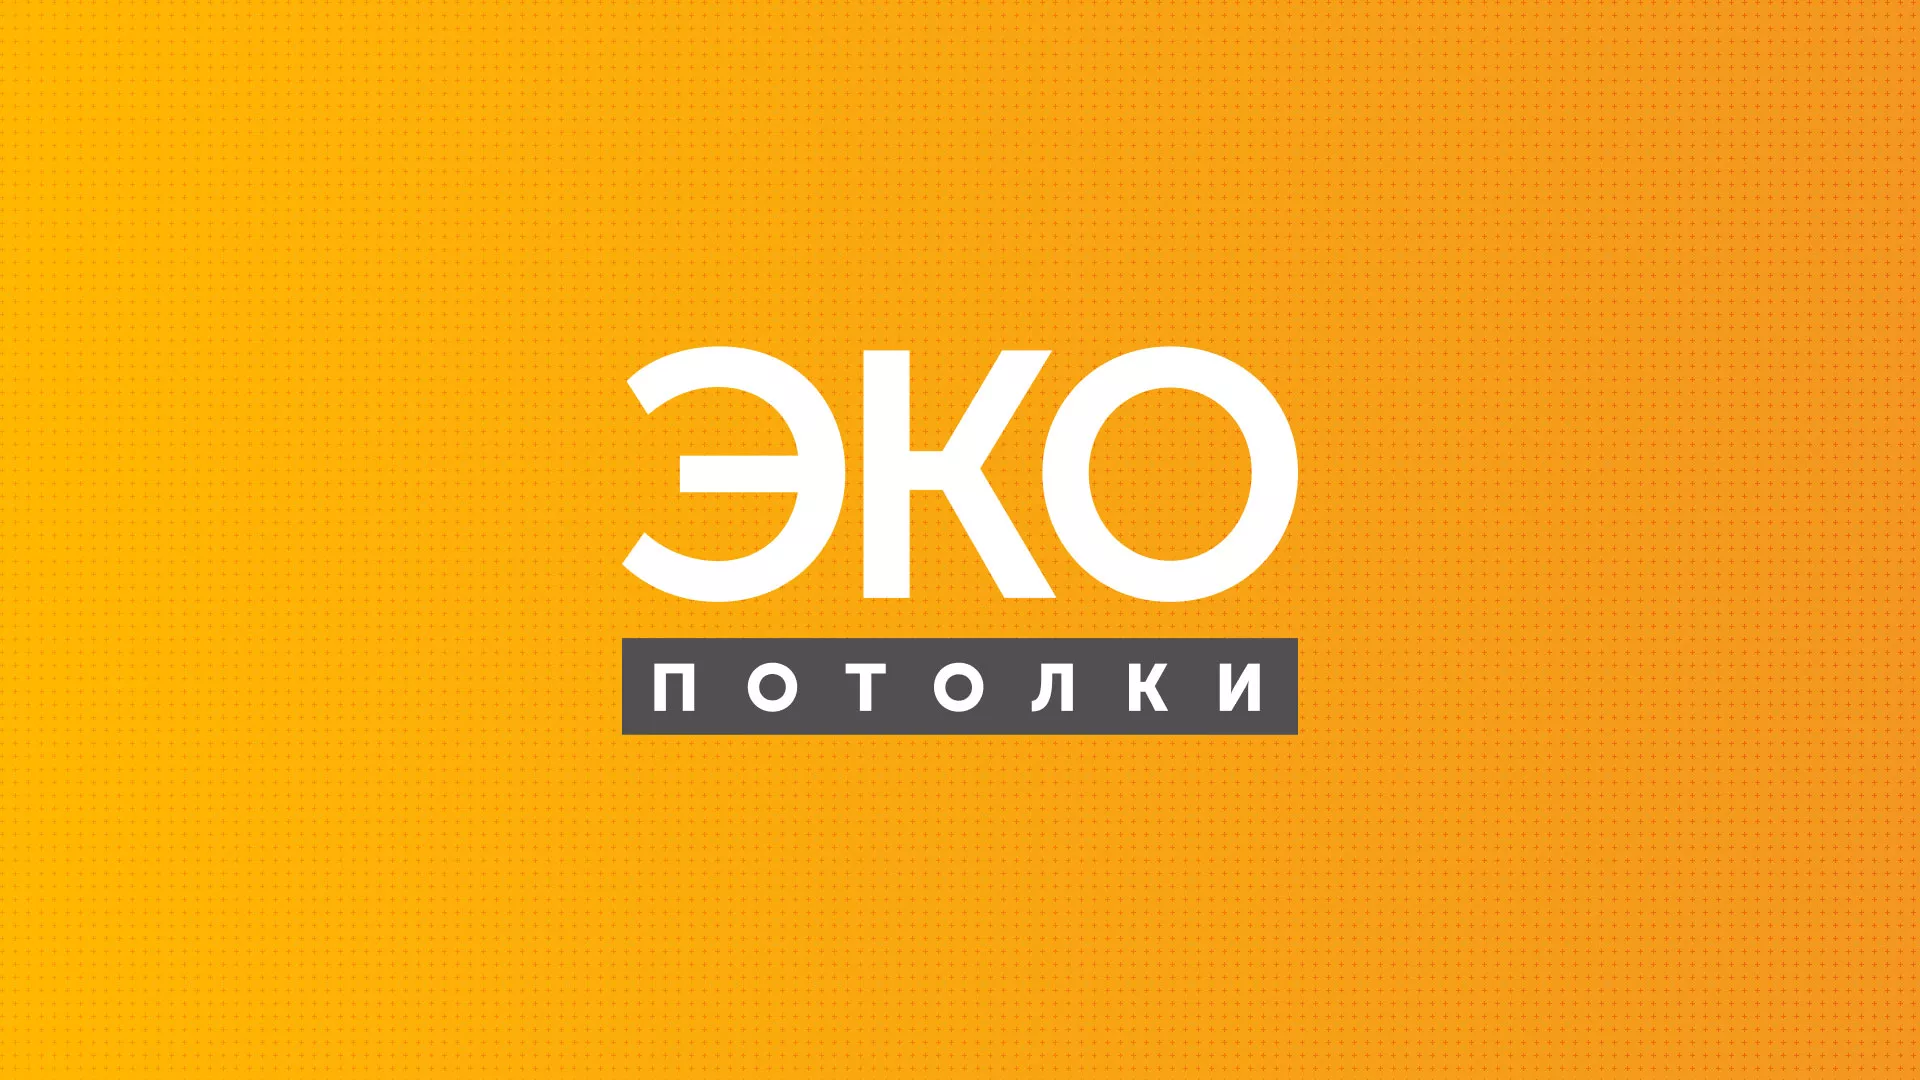 Разработка сайта по натяжным потолкам «Эко Потолки» в Москве